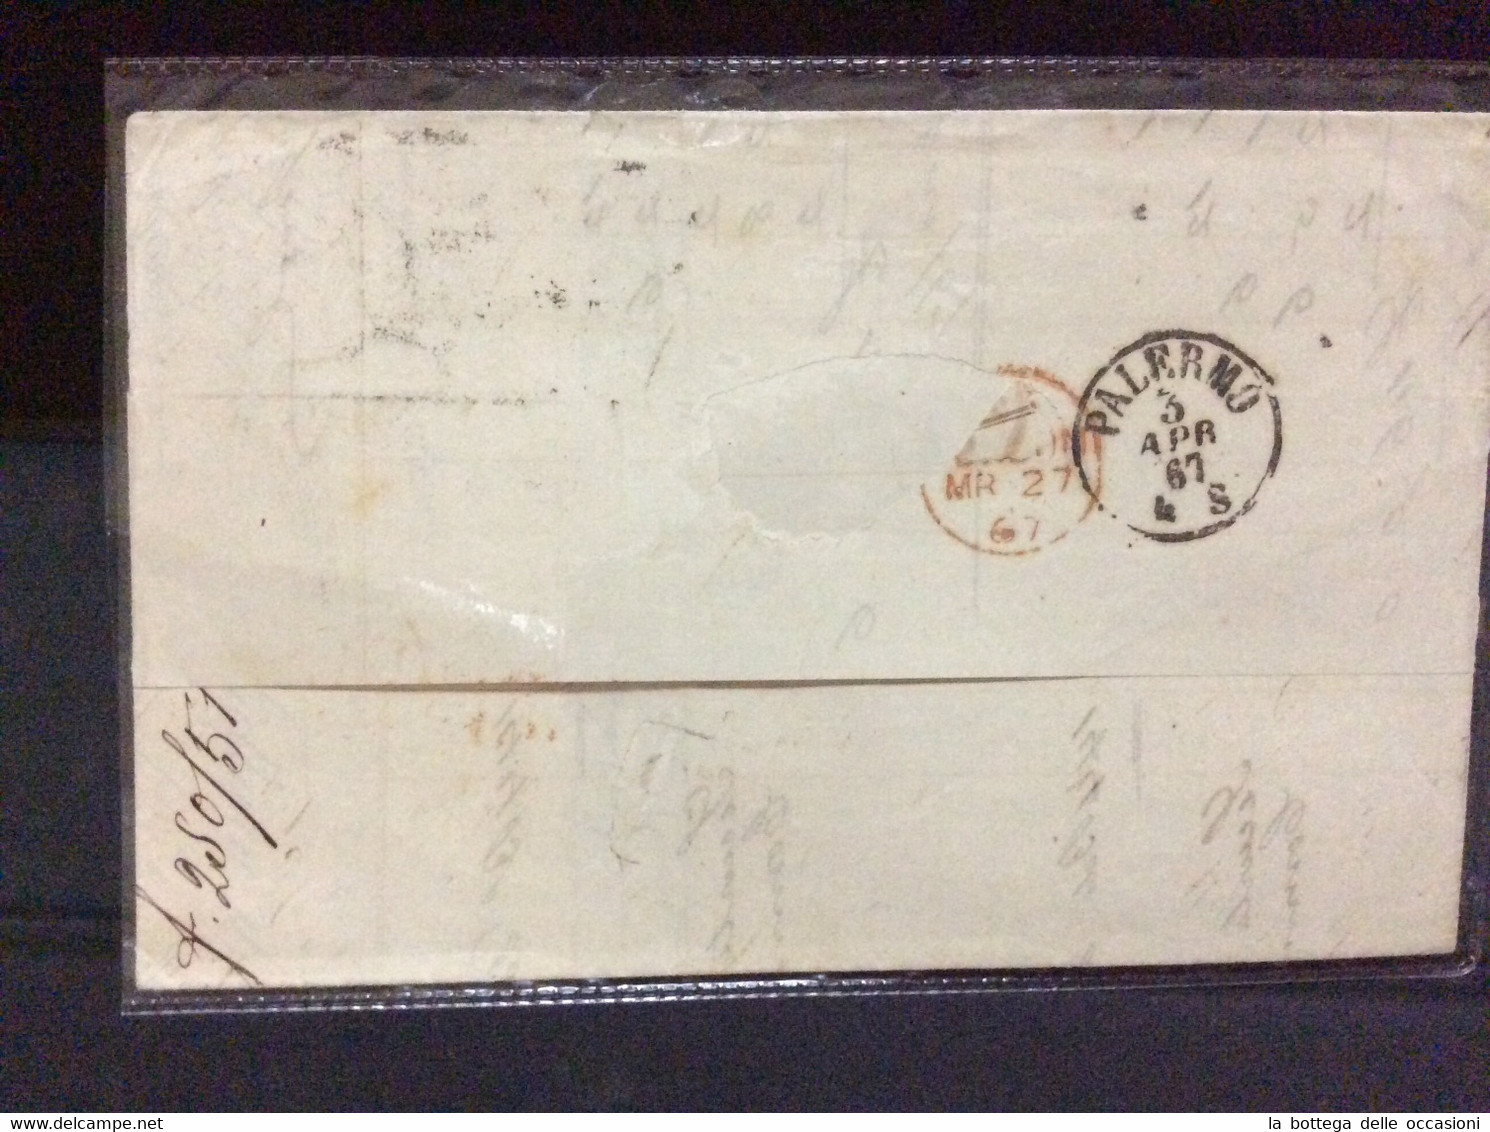 Gran Bretagna Greit Britain Histoire Postale Manchester For Sicily 1867 Palermo - Briefe U. Dokumente